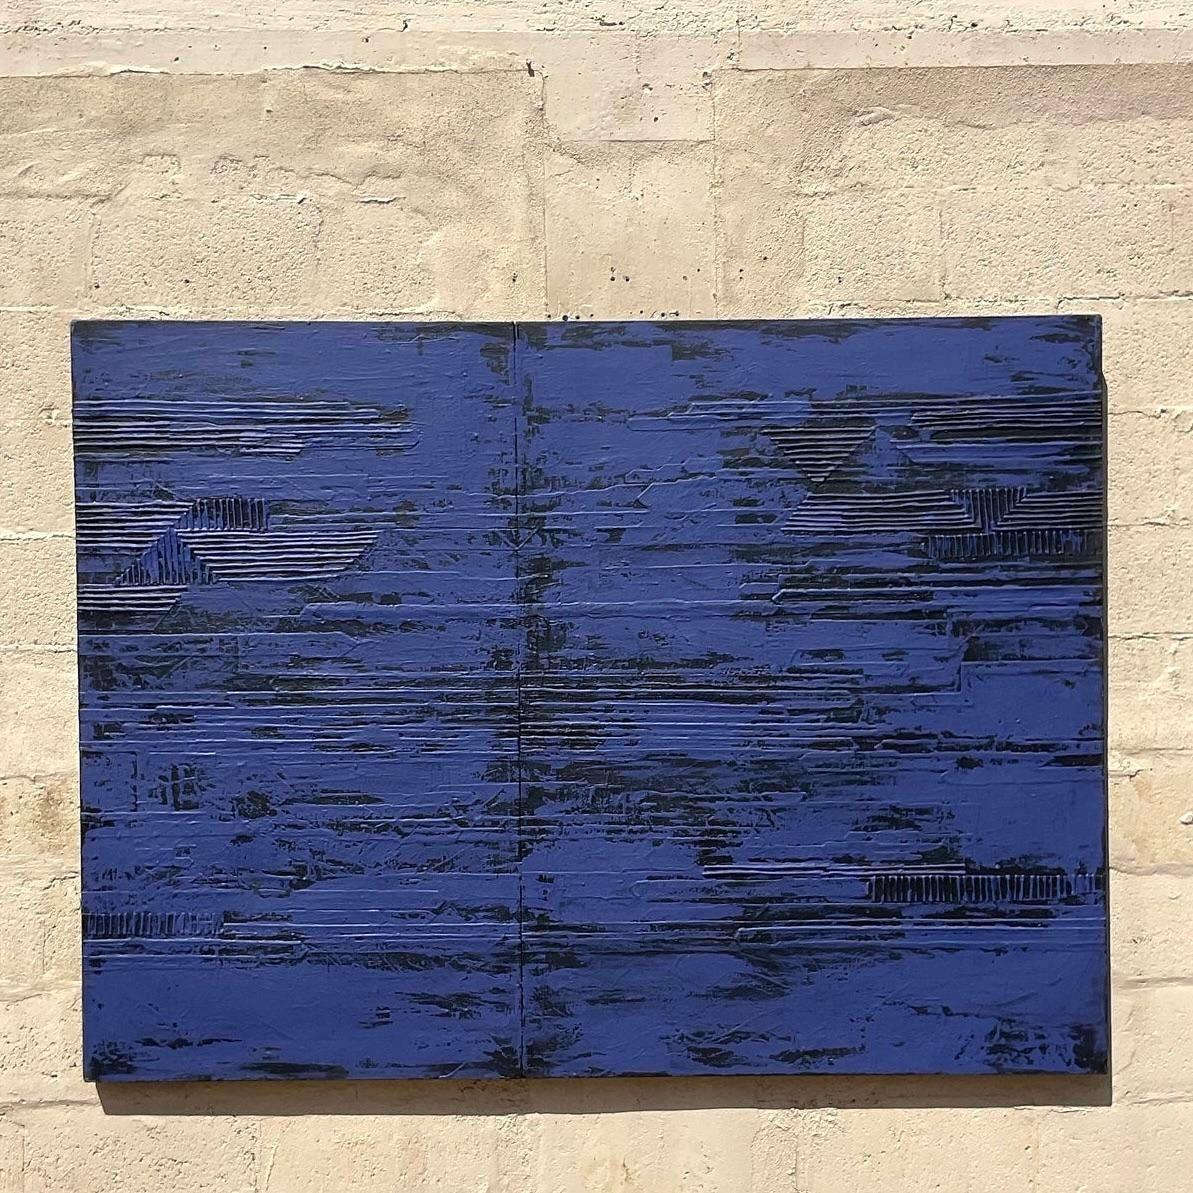 Cet abstrait apparemment minimaliste contient des détails cachés dans les dimensions de l'œuvre. La douceur du bleu marine et du noir apporte une touche subtile à l'espace, mais en y regardant de plus près, des éléments texturaux linéaires se